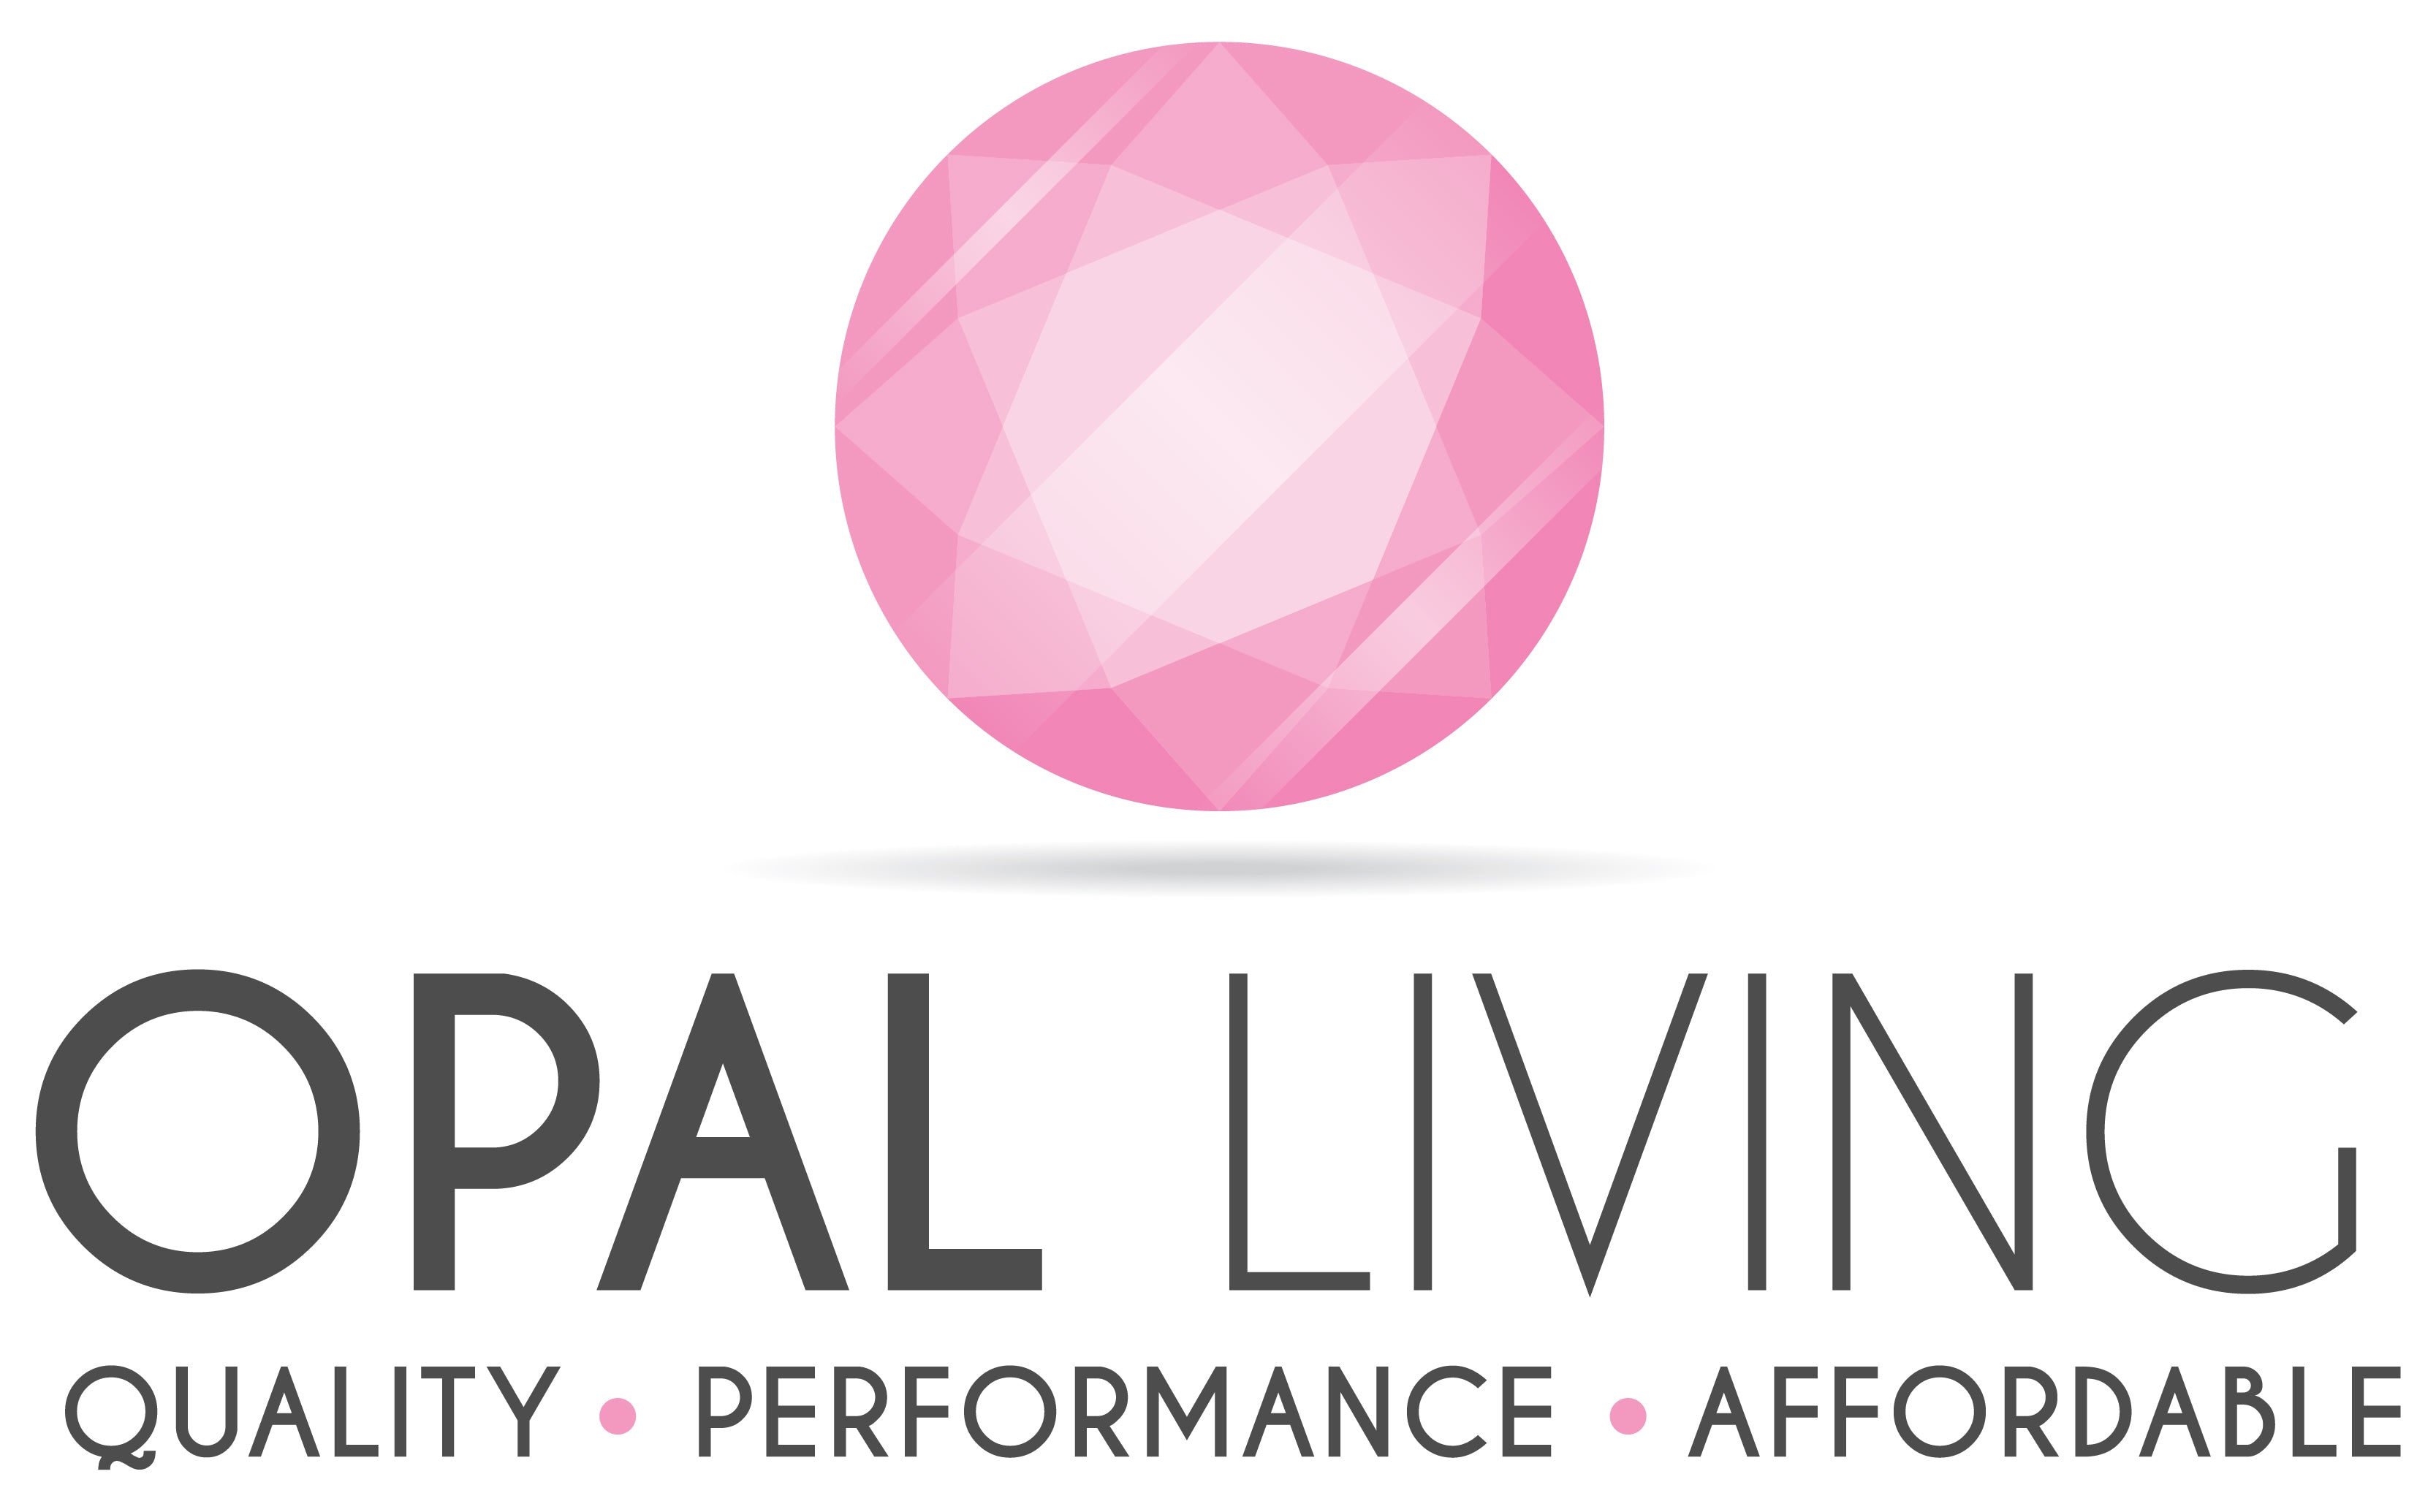 Opal Living